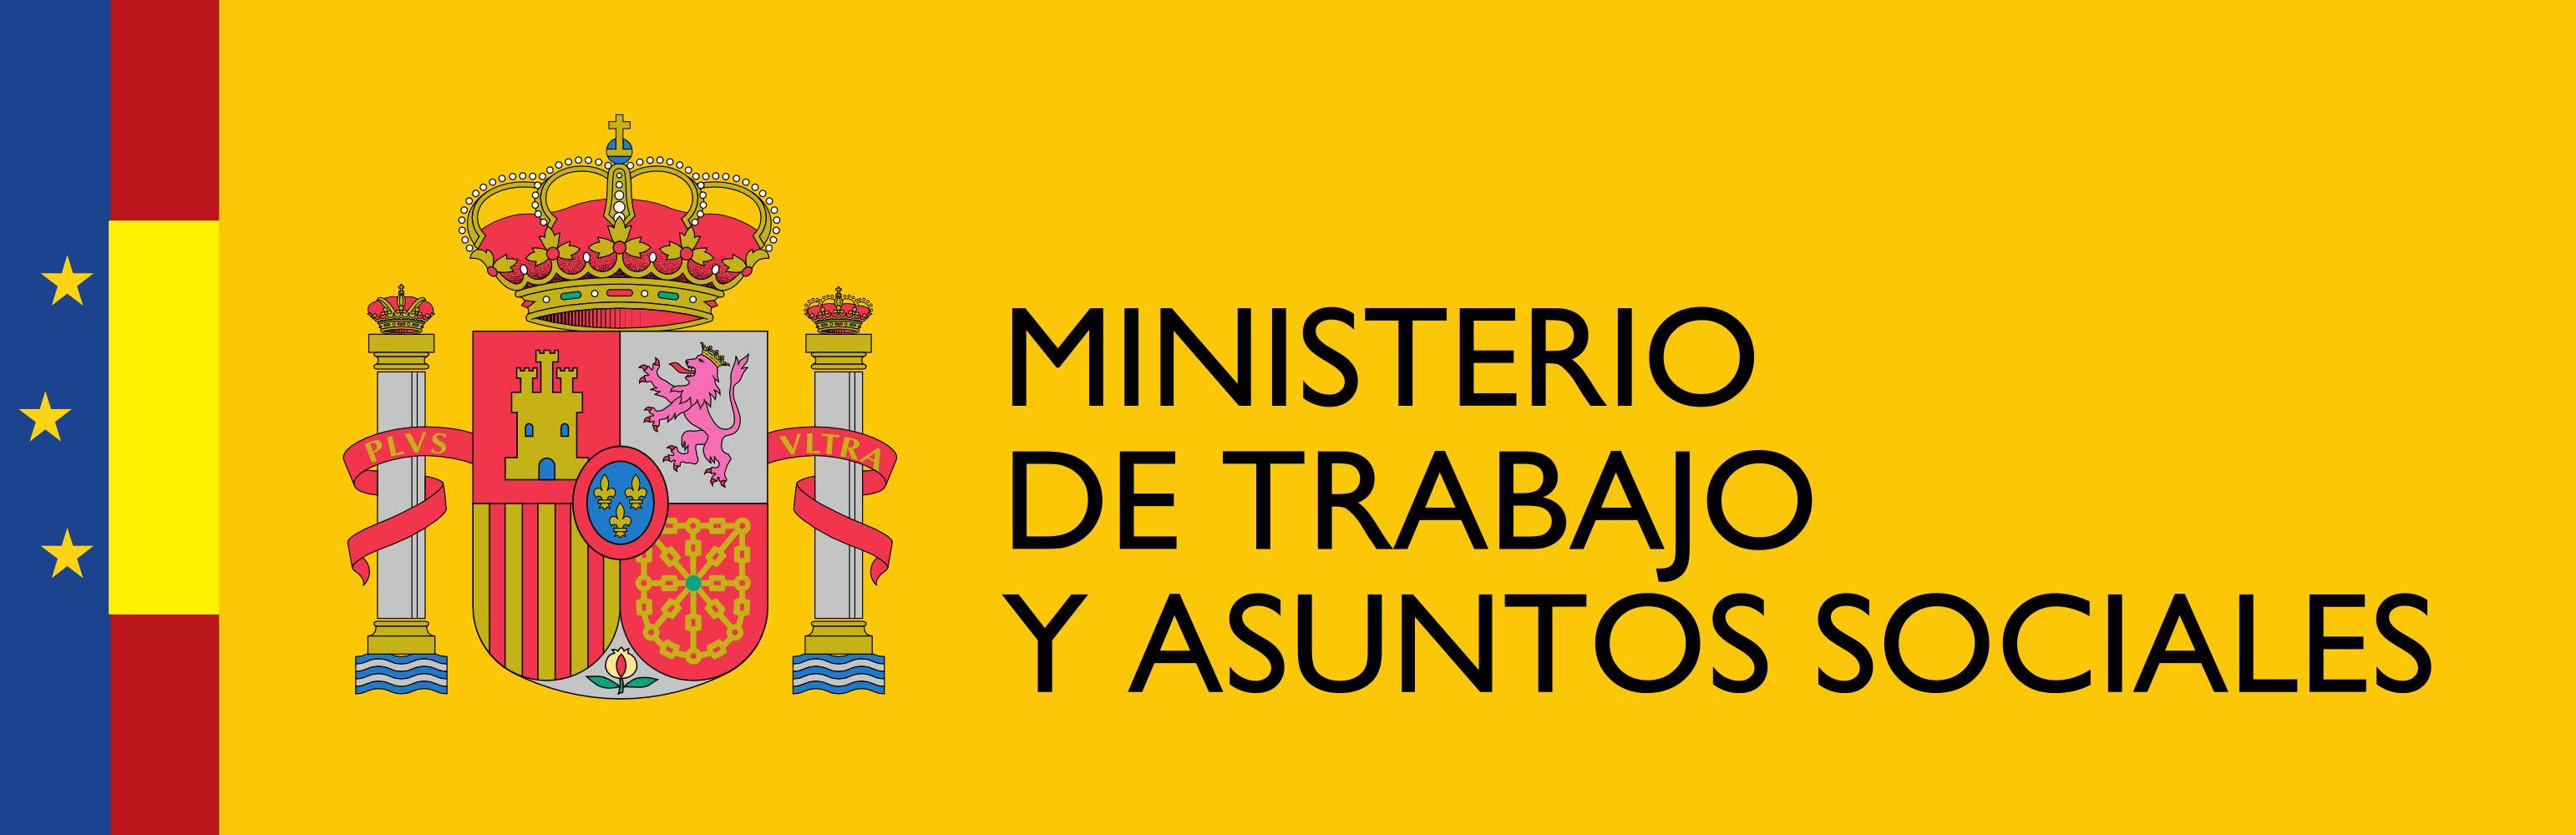 Logotipo del Ministerio de Trabajo y Asuntos Sociales